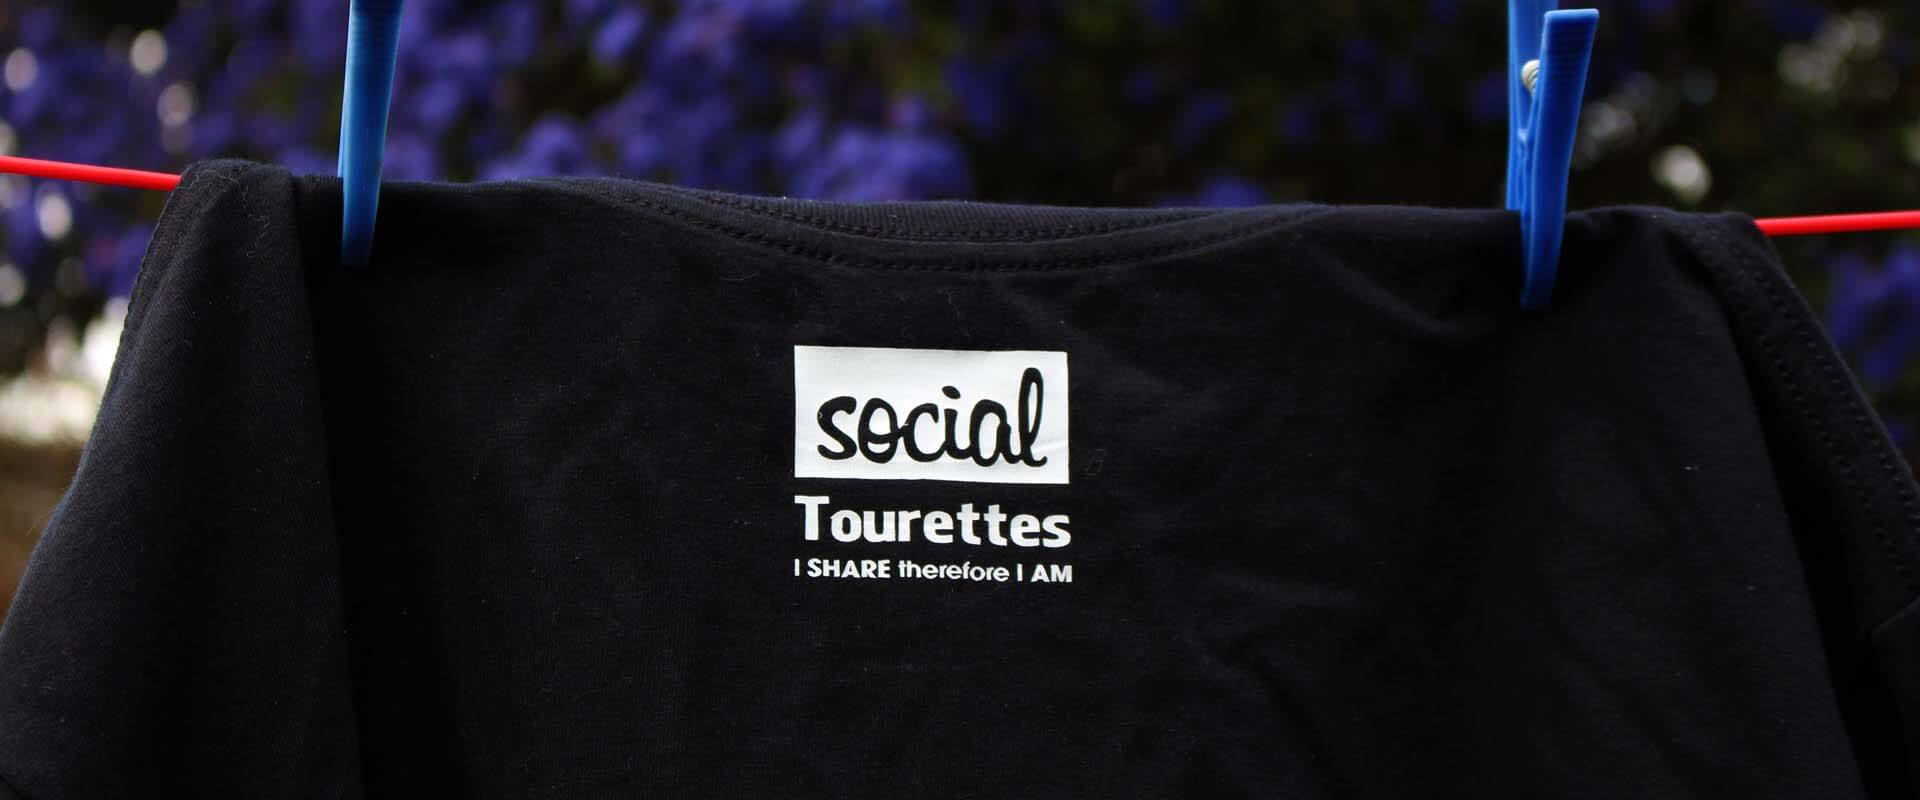 Social Tourettes T-Shirts